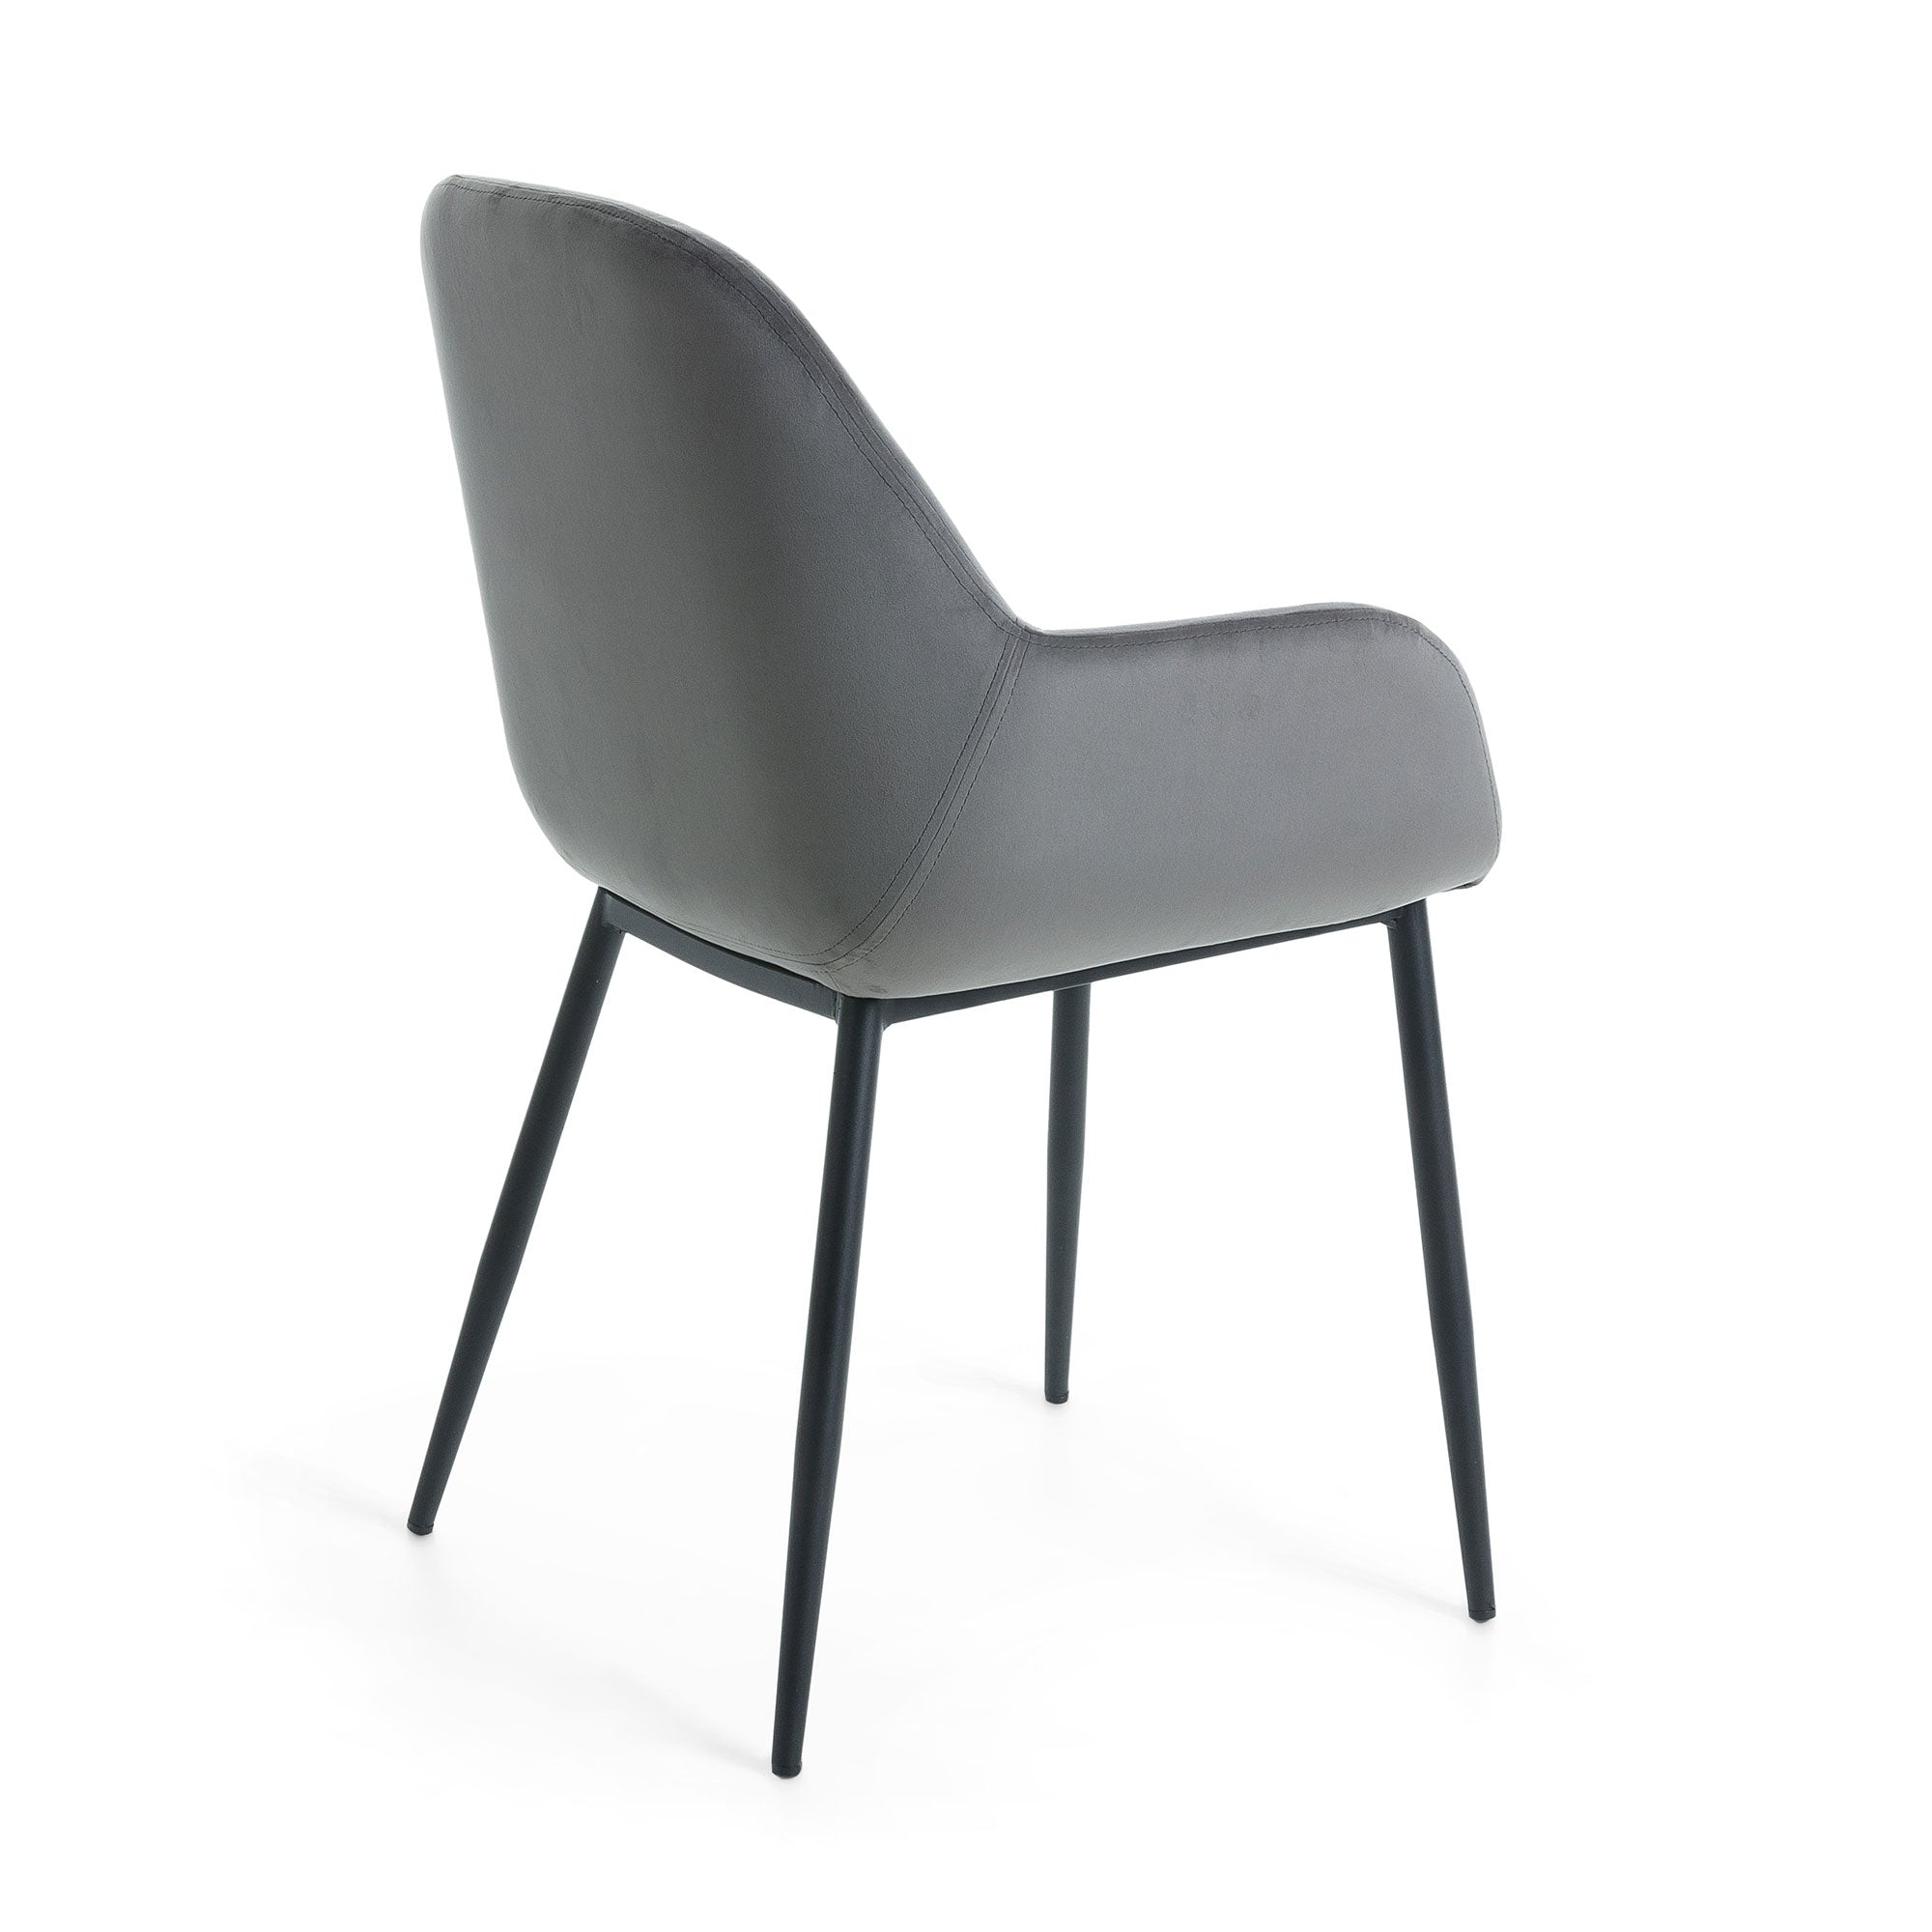 Konna grey velvet chair